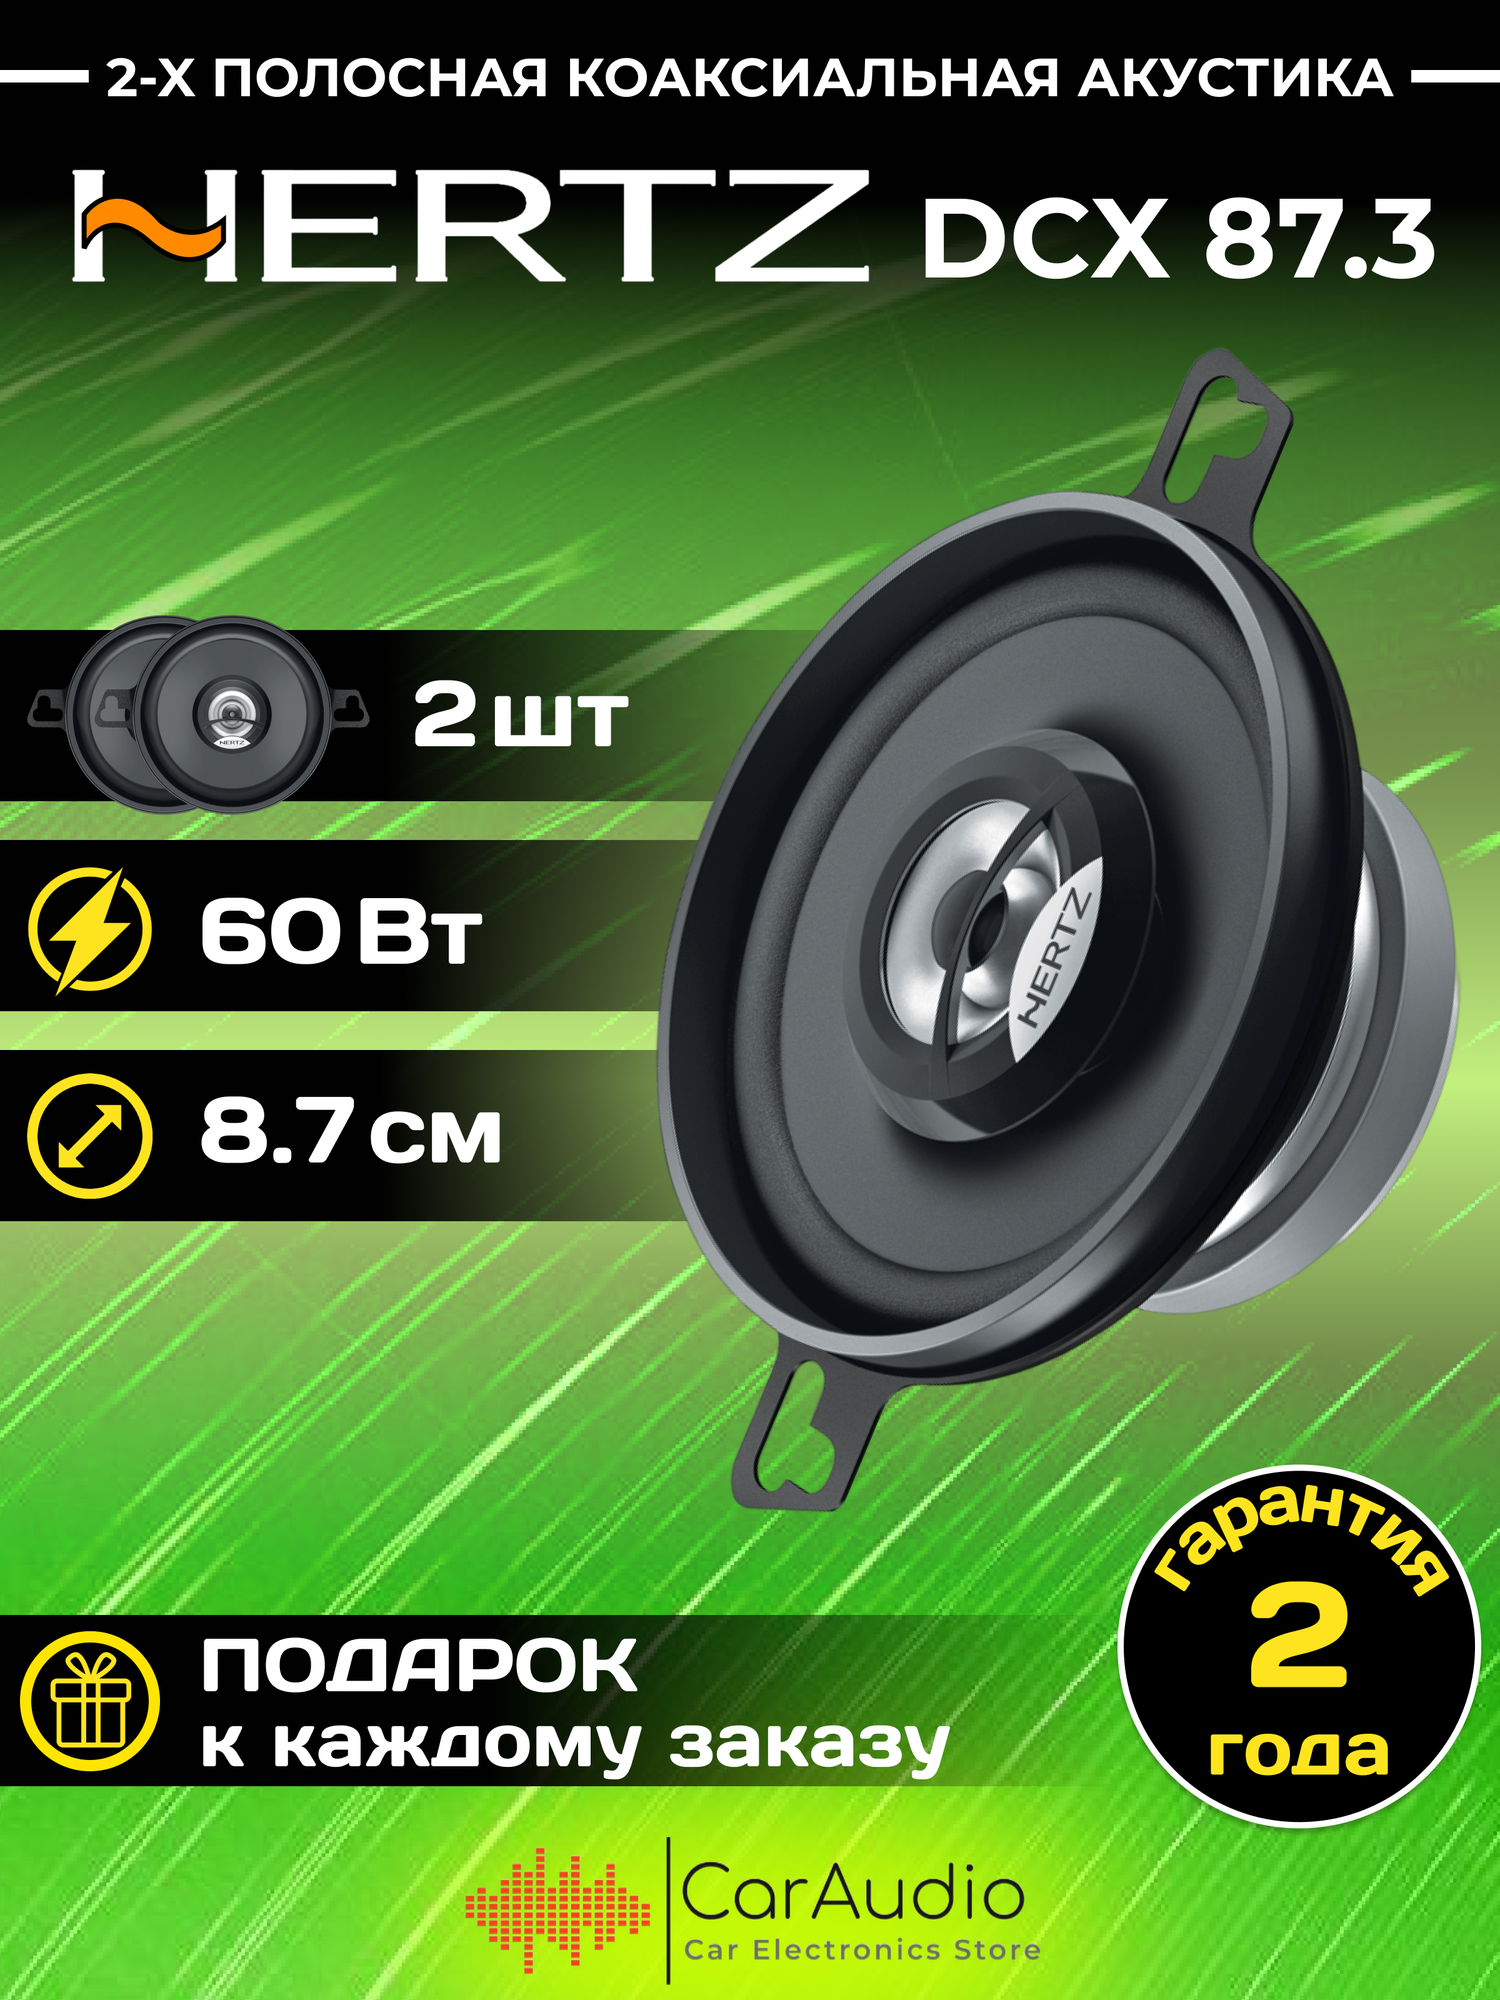 Автомобильная акустика Hertz DCX 87.3